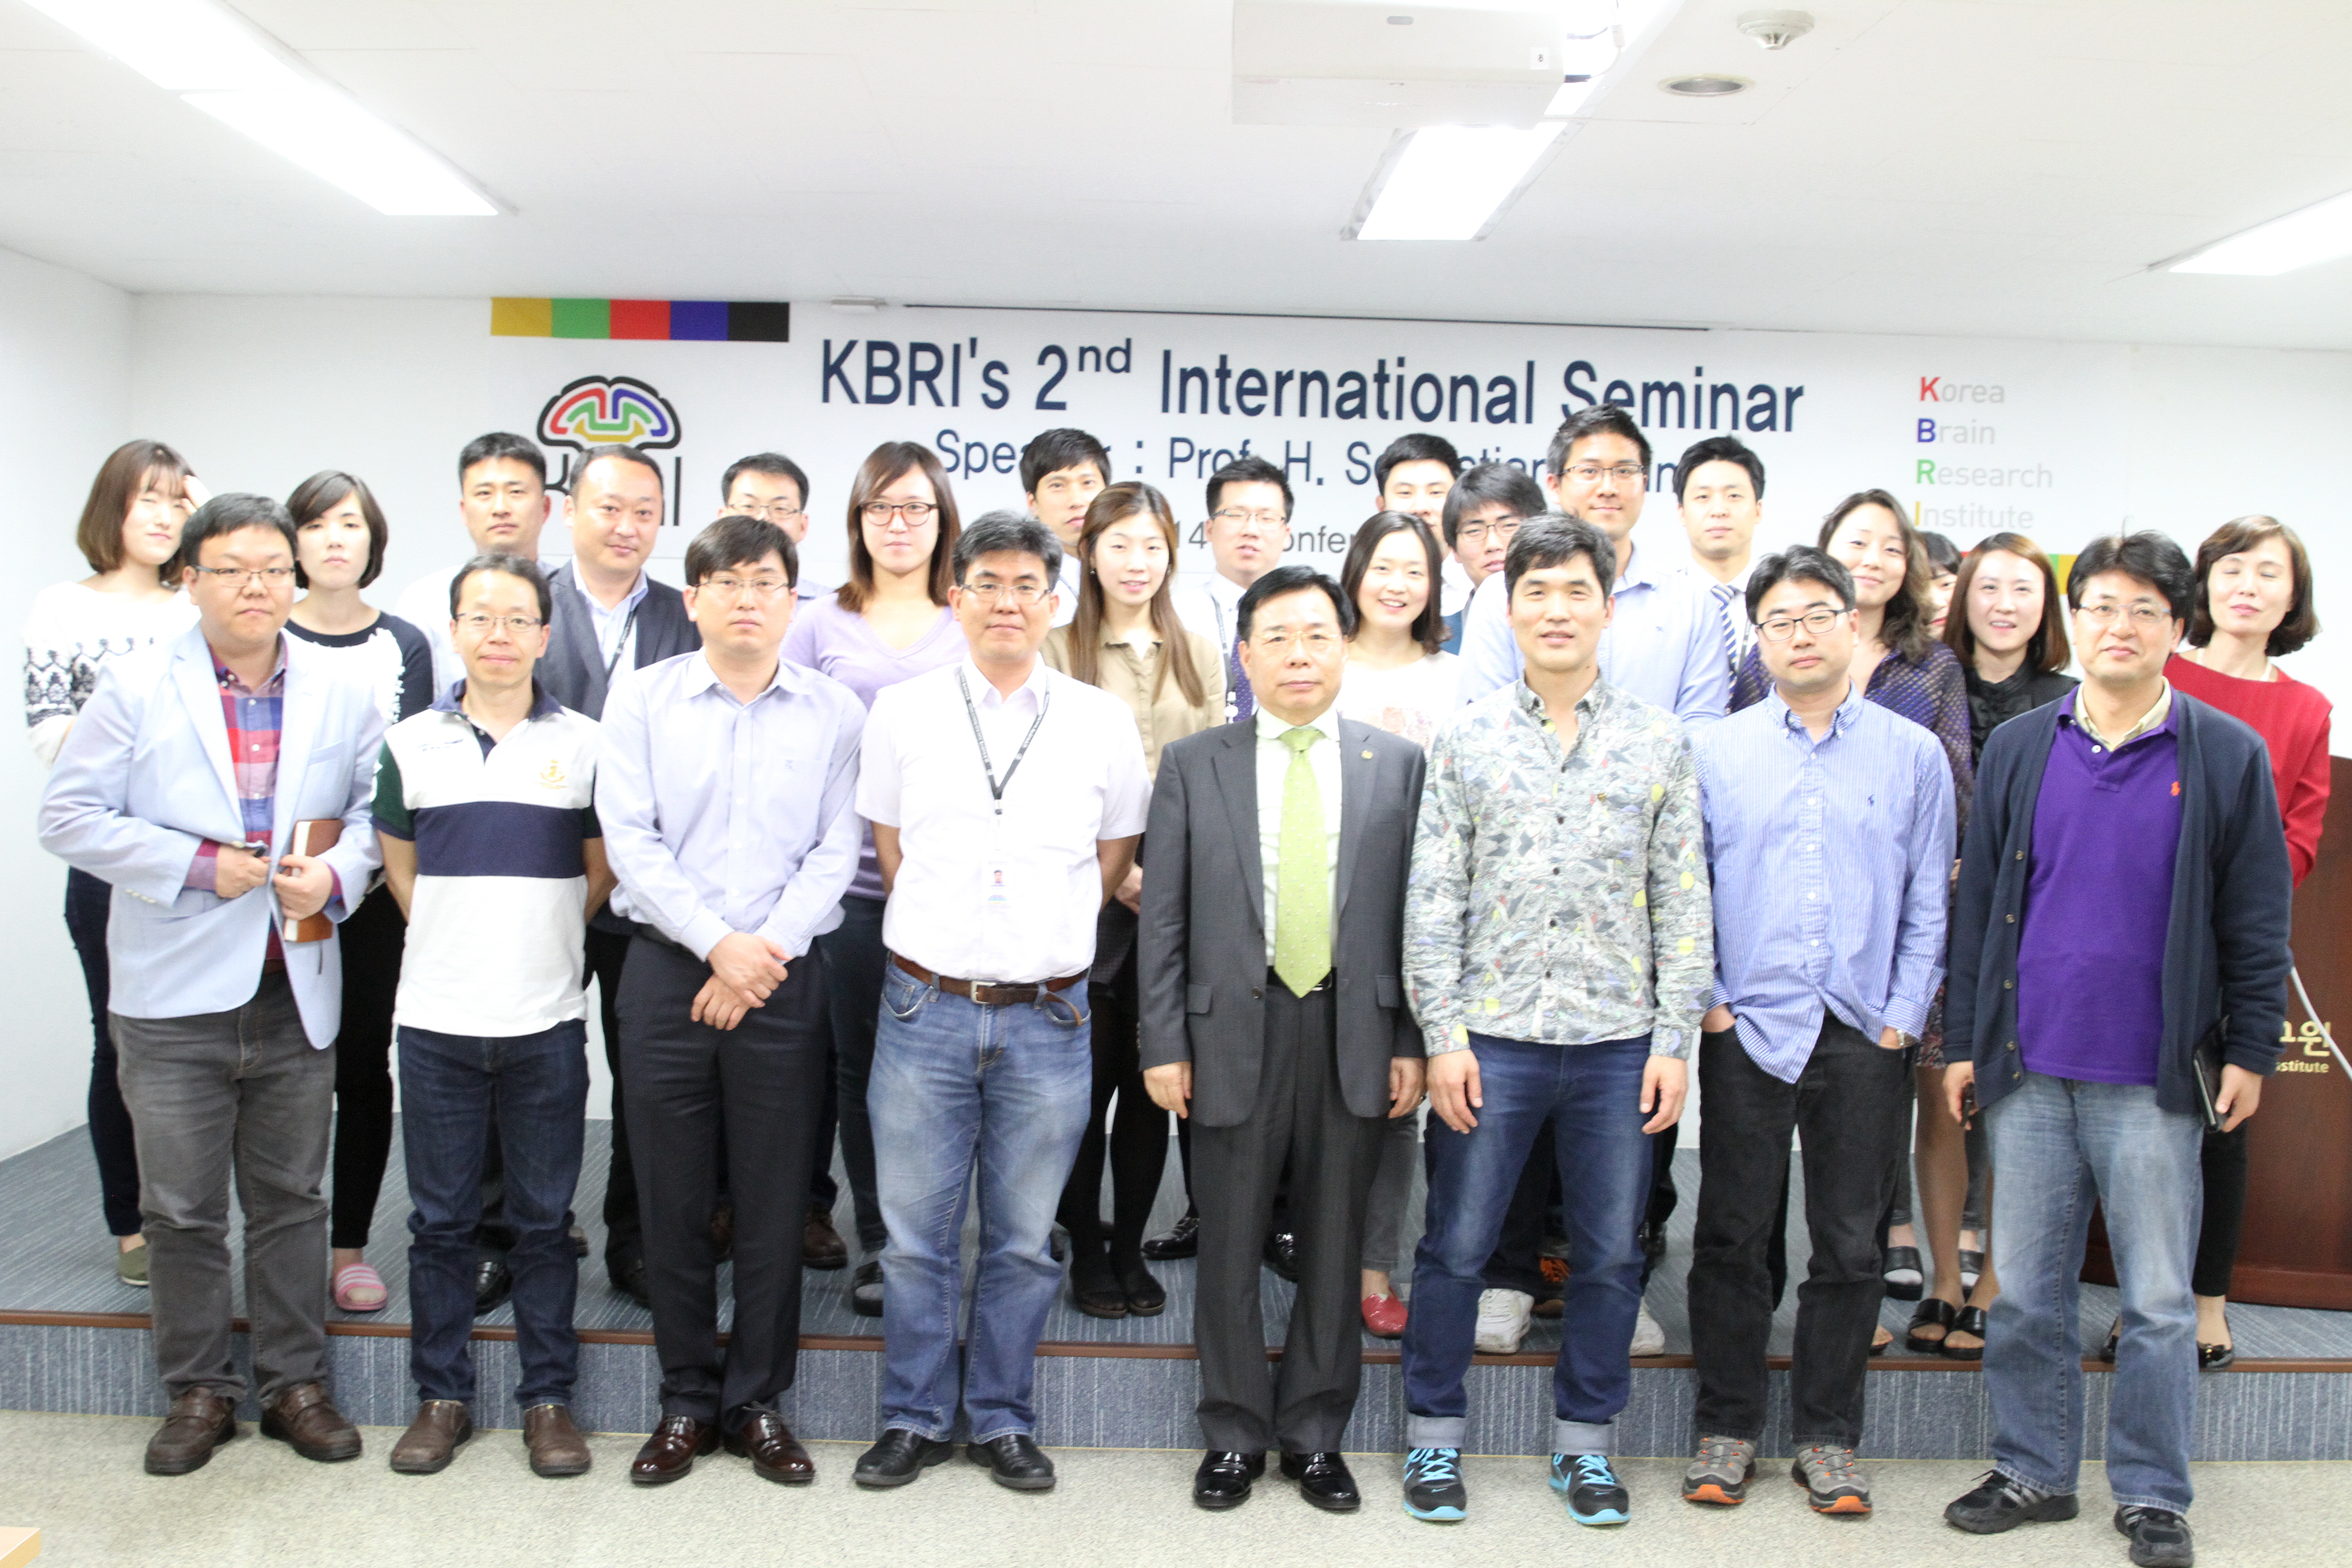 2014 International Seminar, H. Sebastian seung, Ph.D. (2014.04.17)